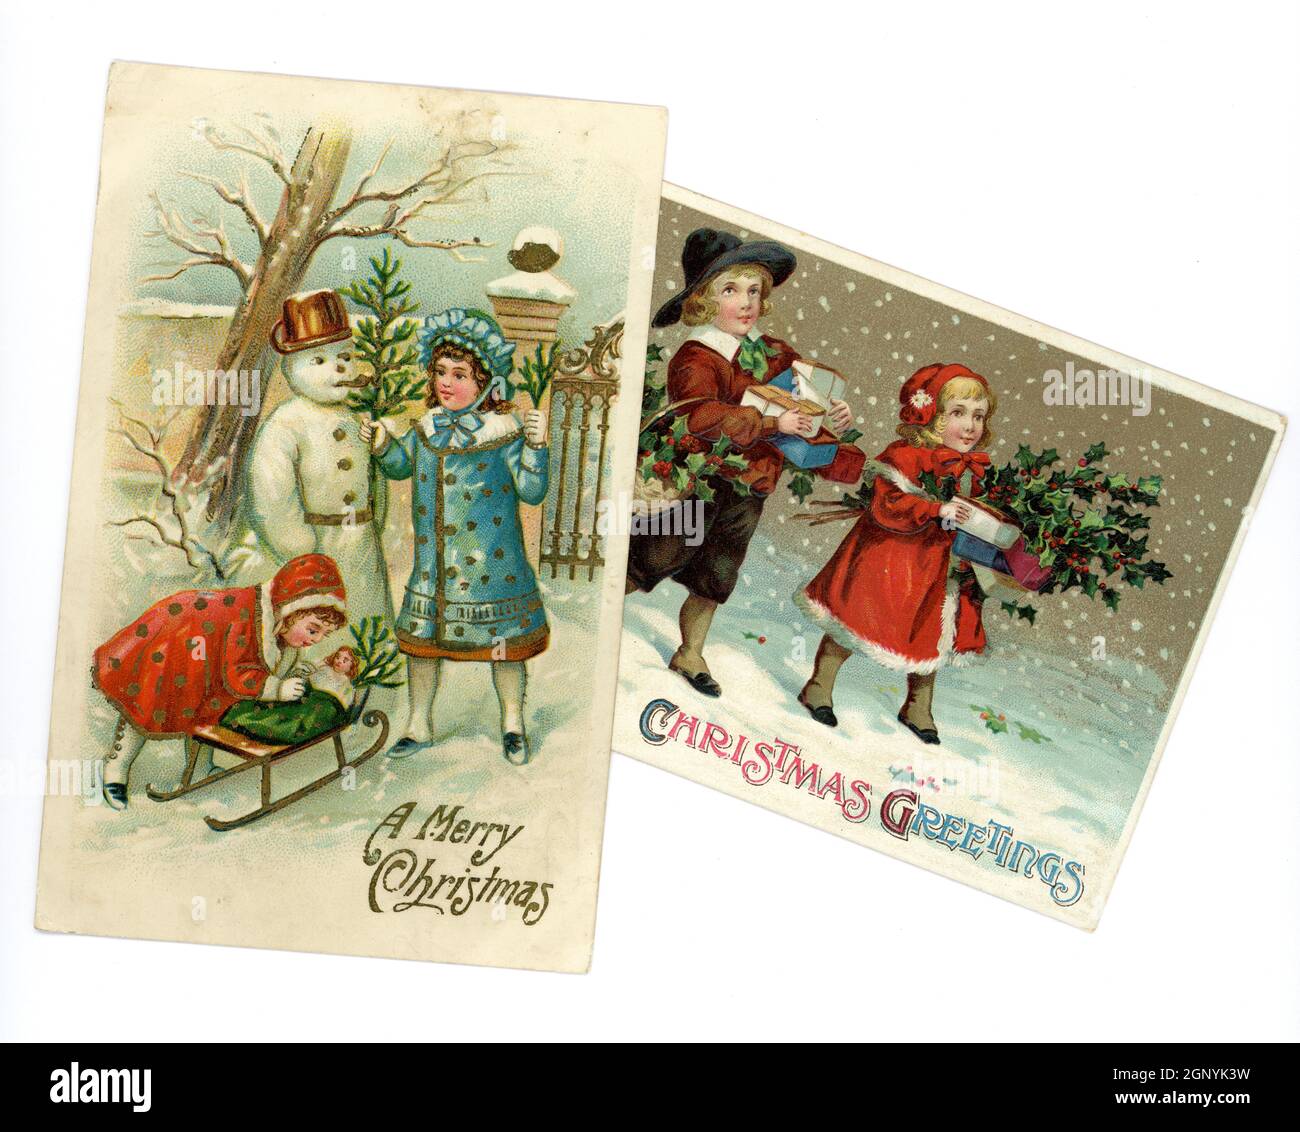 Original geprägte, edwardianische Weihnachtsgrüße Postkarten, gedruckt in Deutschland, von niedlichen kleinen Kindern, die zu dieser Zeit modische Winterkleidung tragen, einen Schneemann bauen und Geschenke tragen, um 1910, Großbritannien Stockfoto